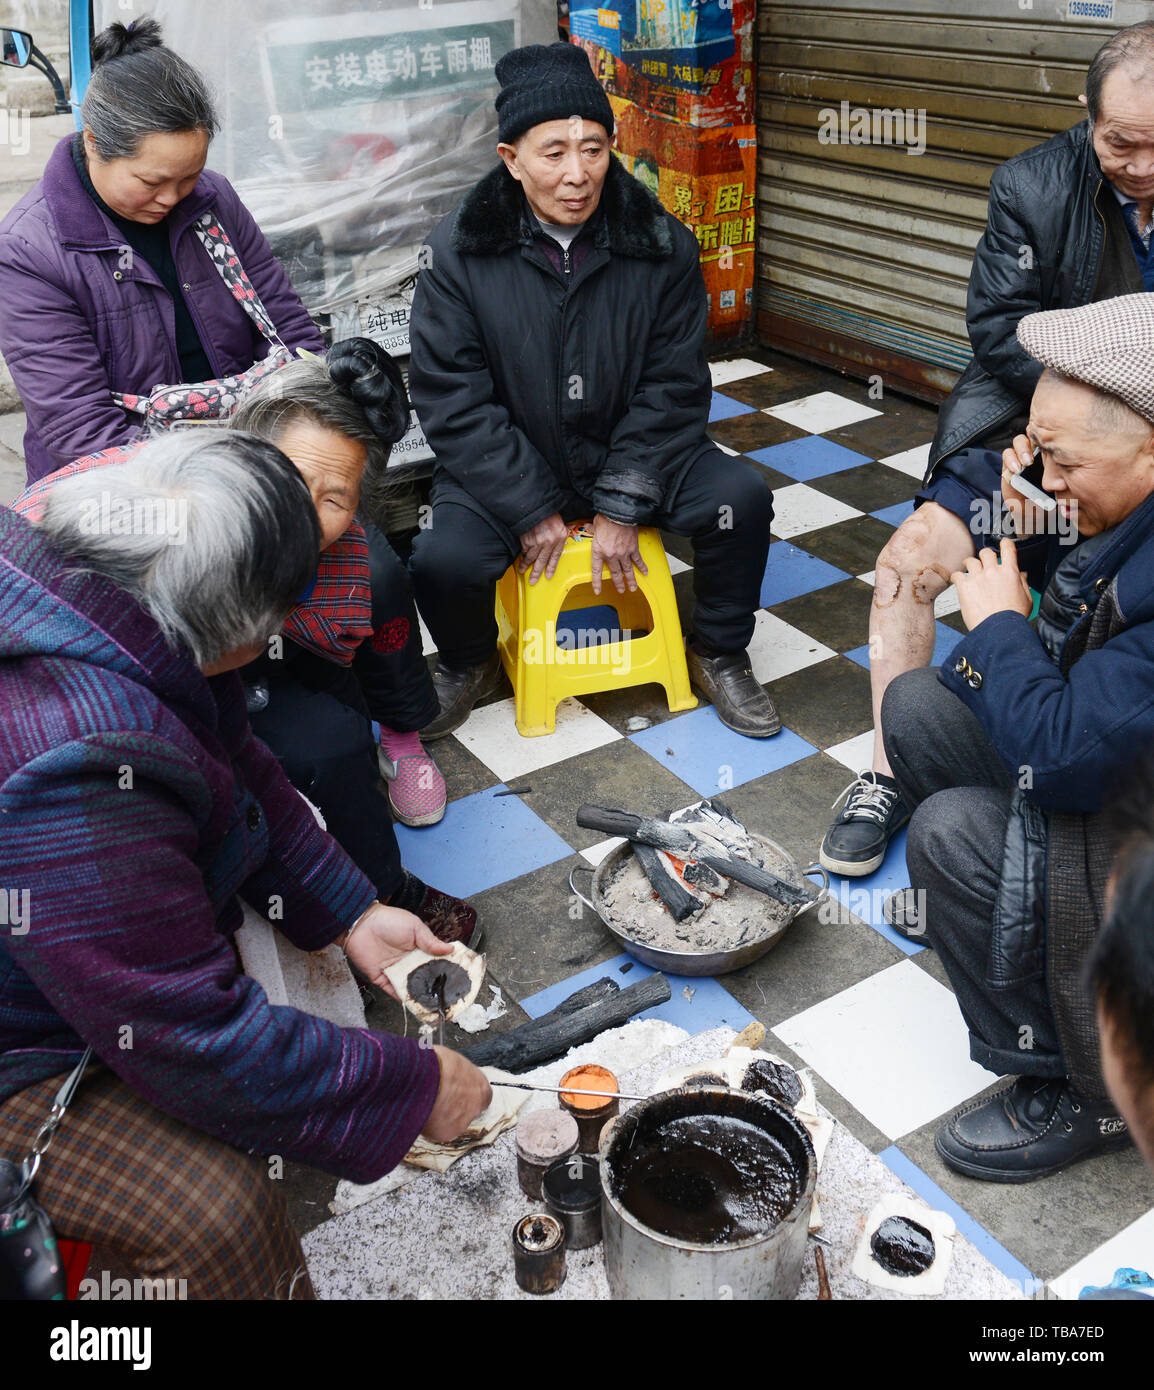 Cinese anziani seduti insieme per le strade di Kaili, Guizhou, Cina. Foto Stock